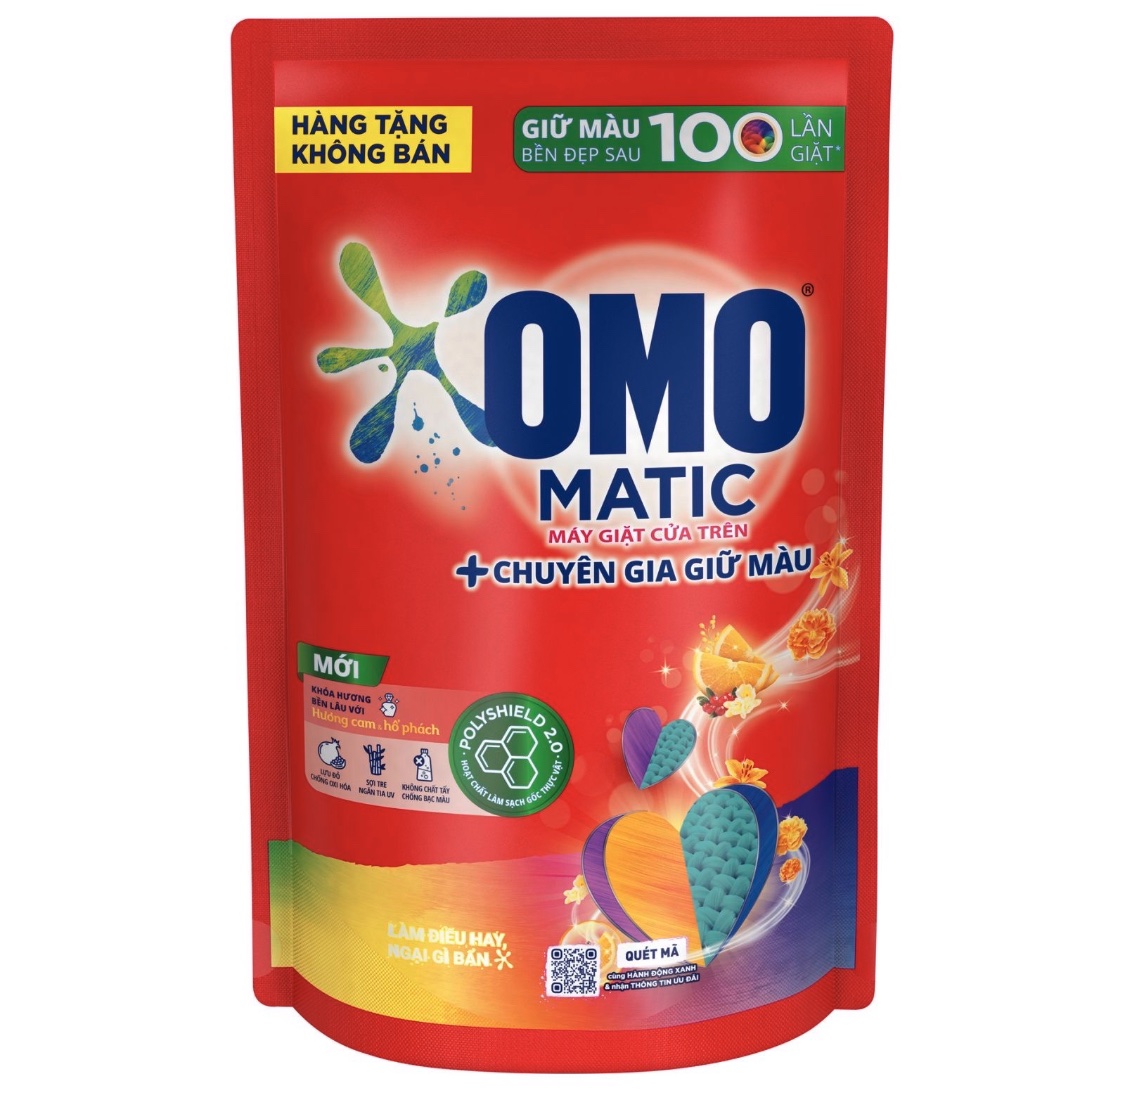 Hàng tặng không bán Túi nước giặt OMO Matic chuyên dụng cửa trên chuyên